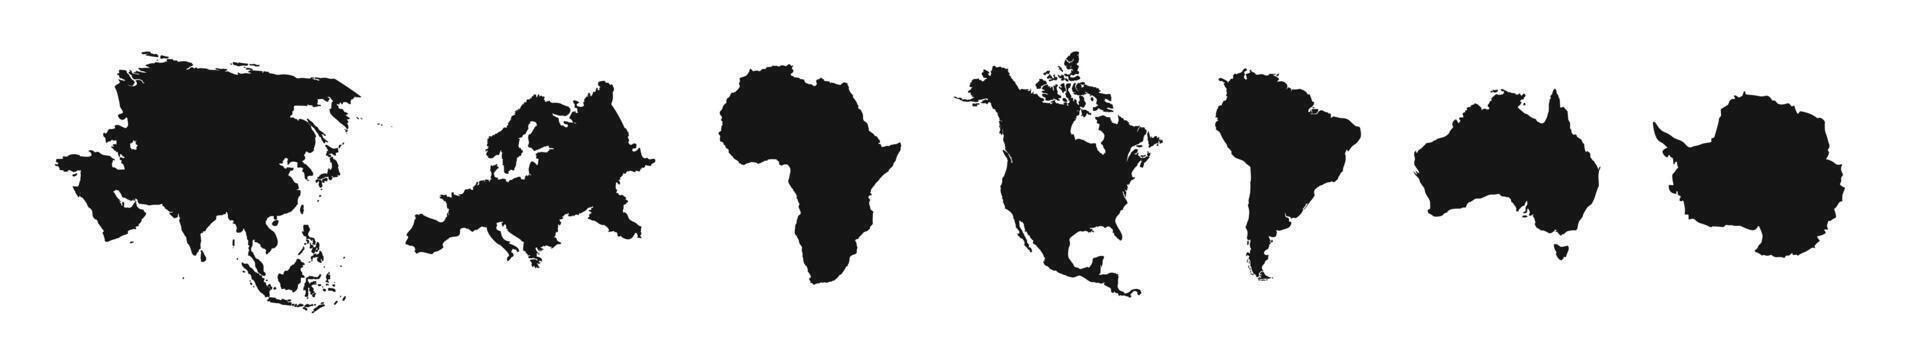 mundo continentes siluetas mundo mapa iconos Europa, Asia, America, África, Australia continentes vector